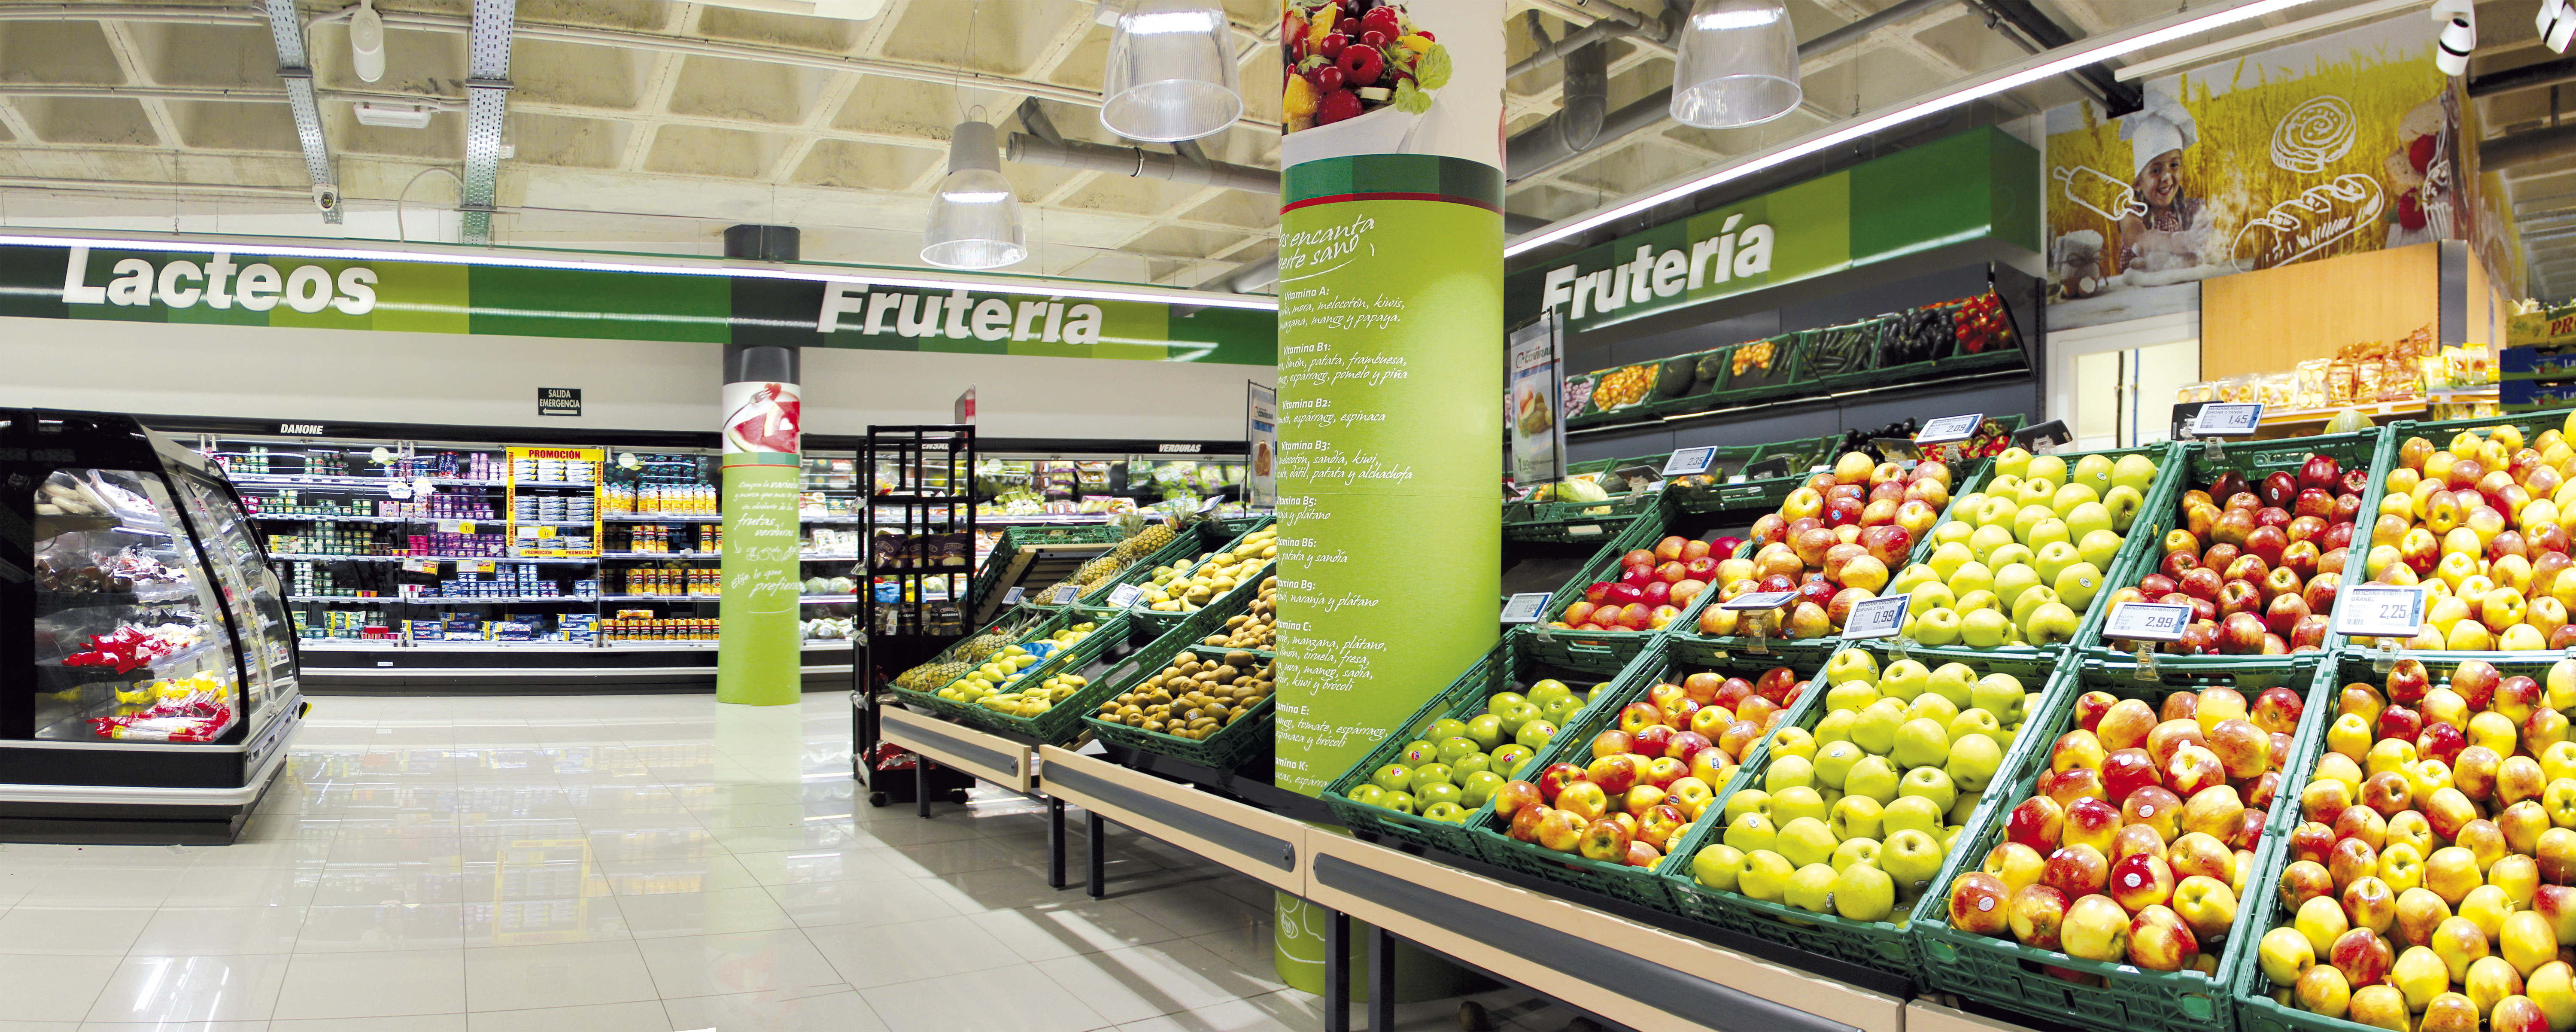 Covirán abre 23 novos supermercados em Espanha e Portugal